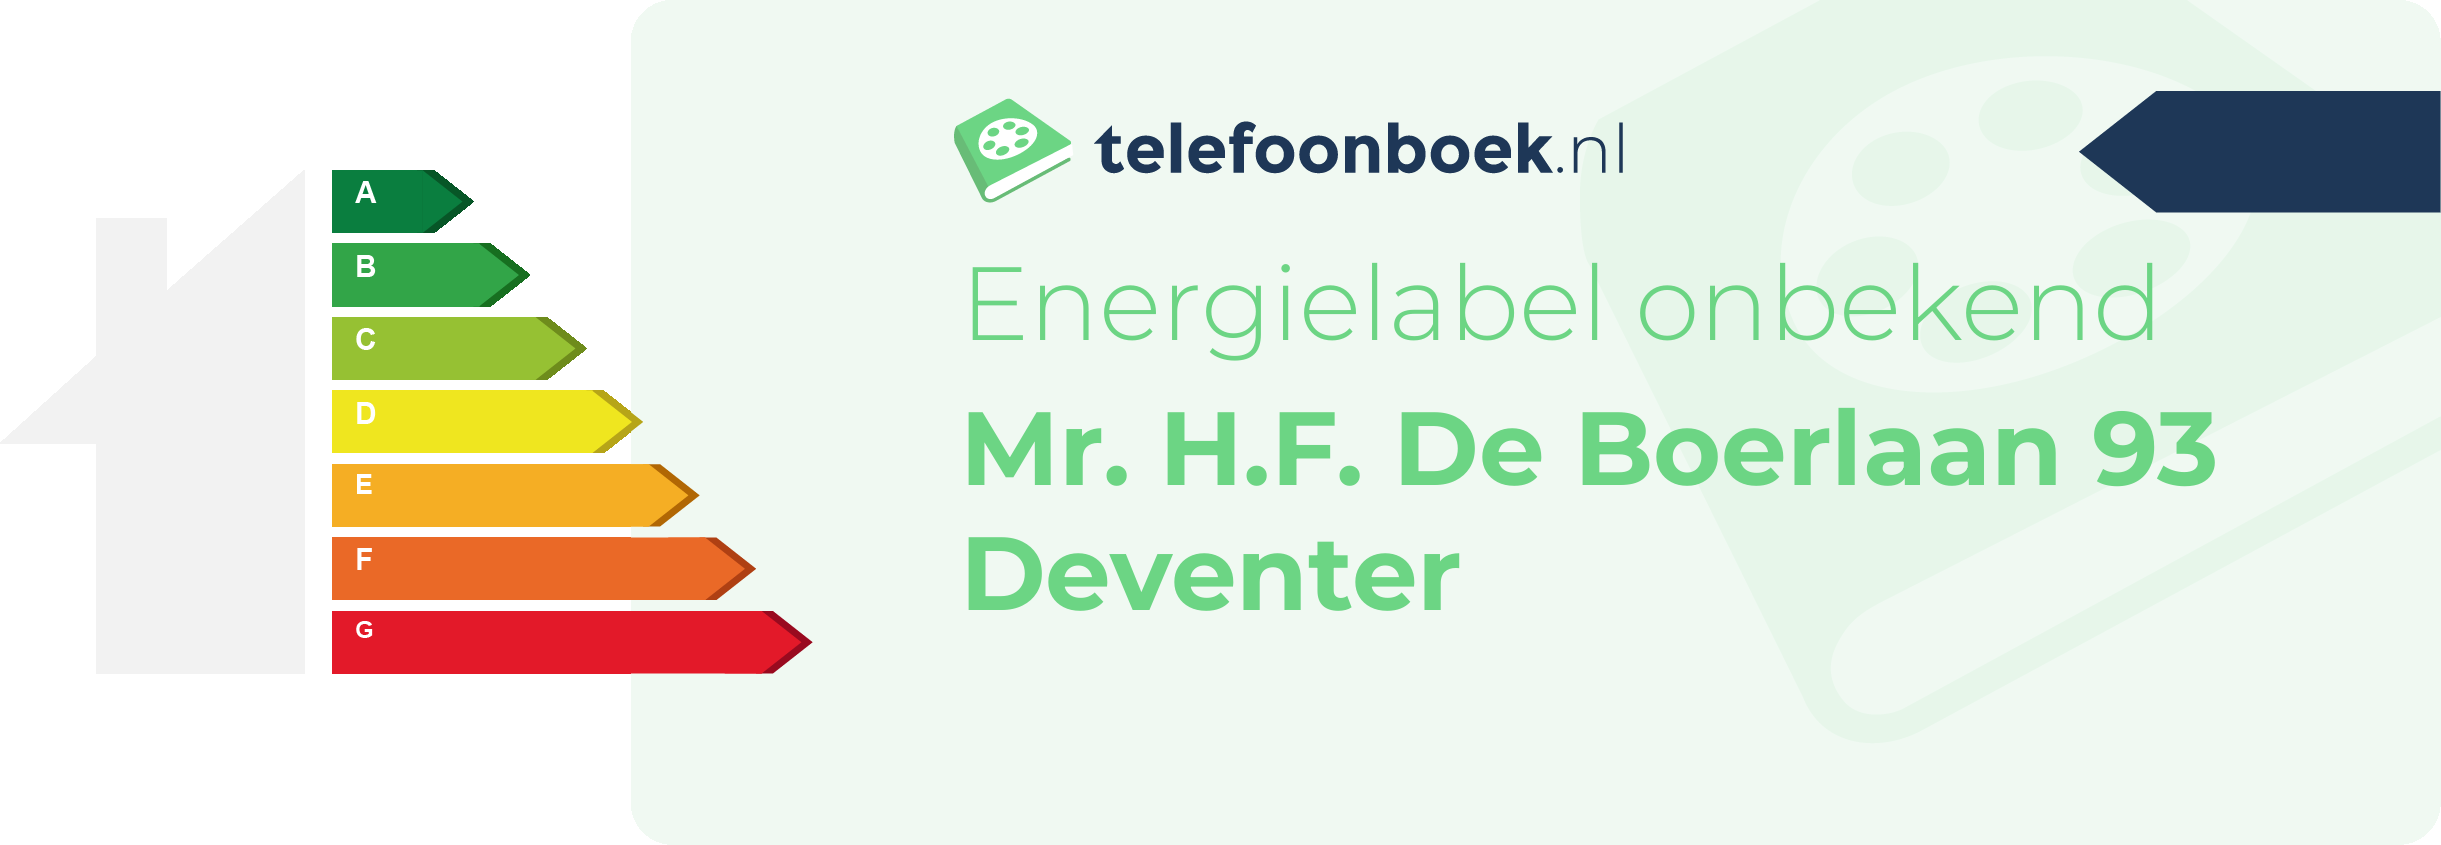 Energielabel Mr. H.F. De Boerlaan 93 Deventer